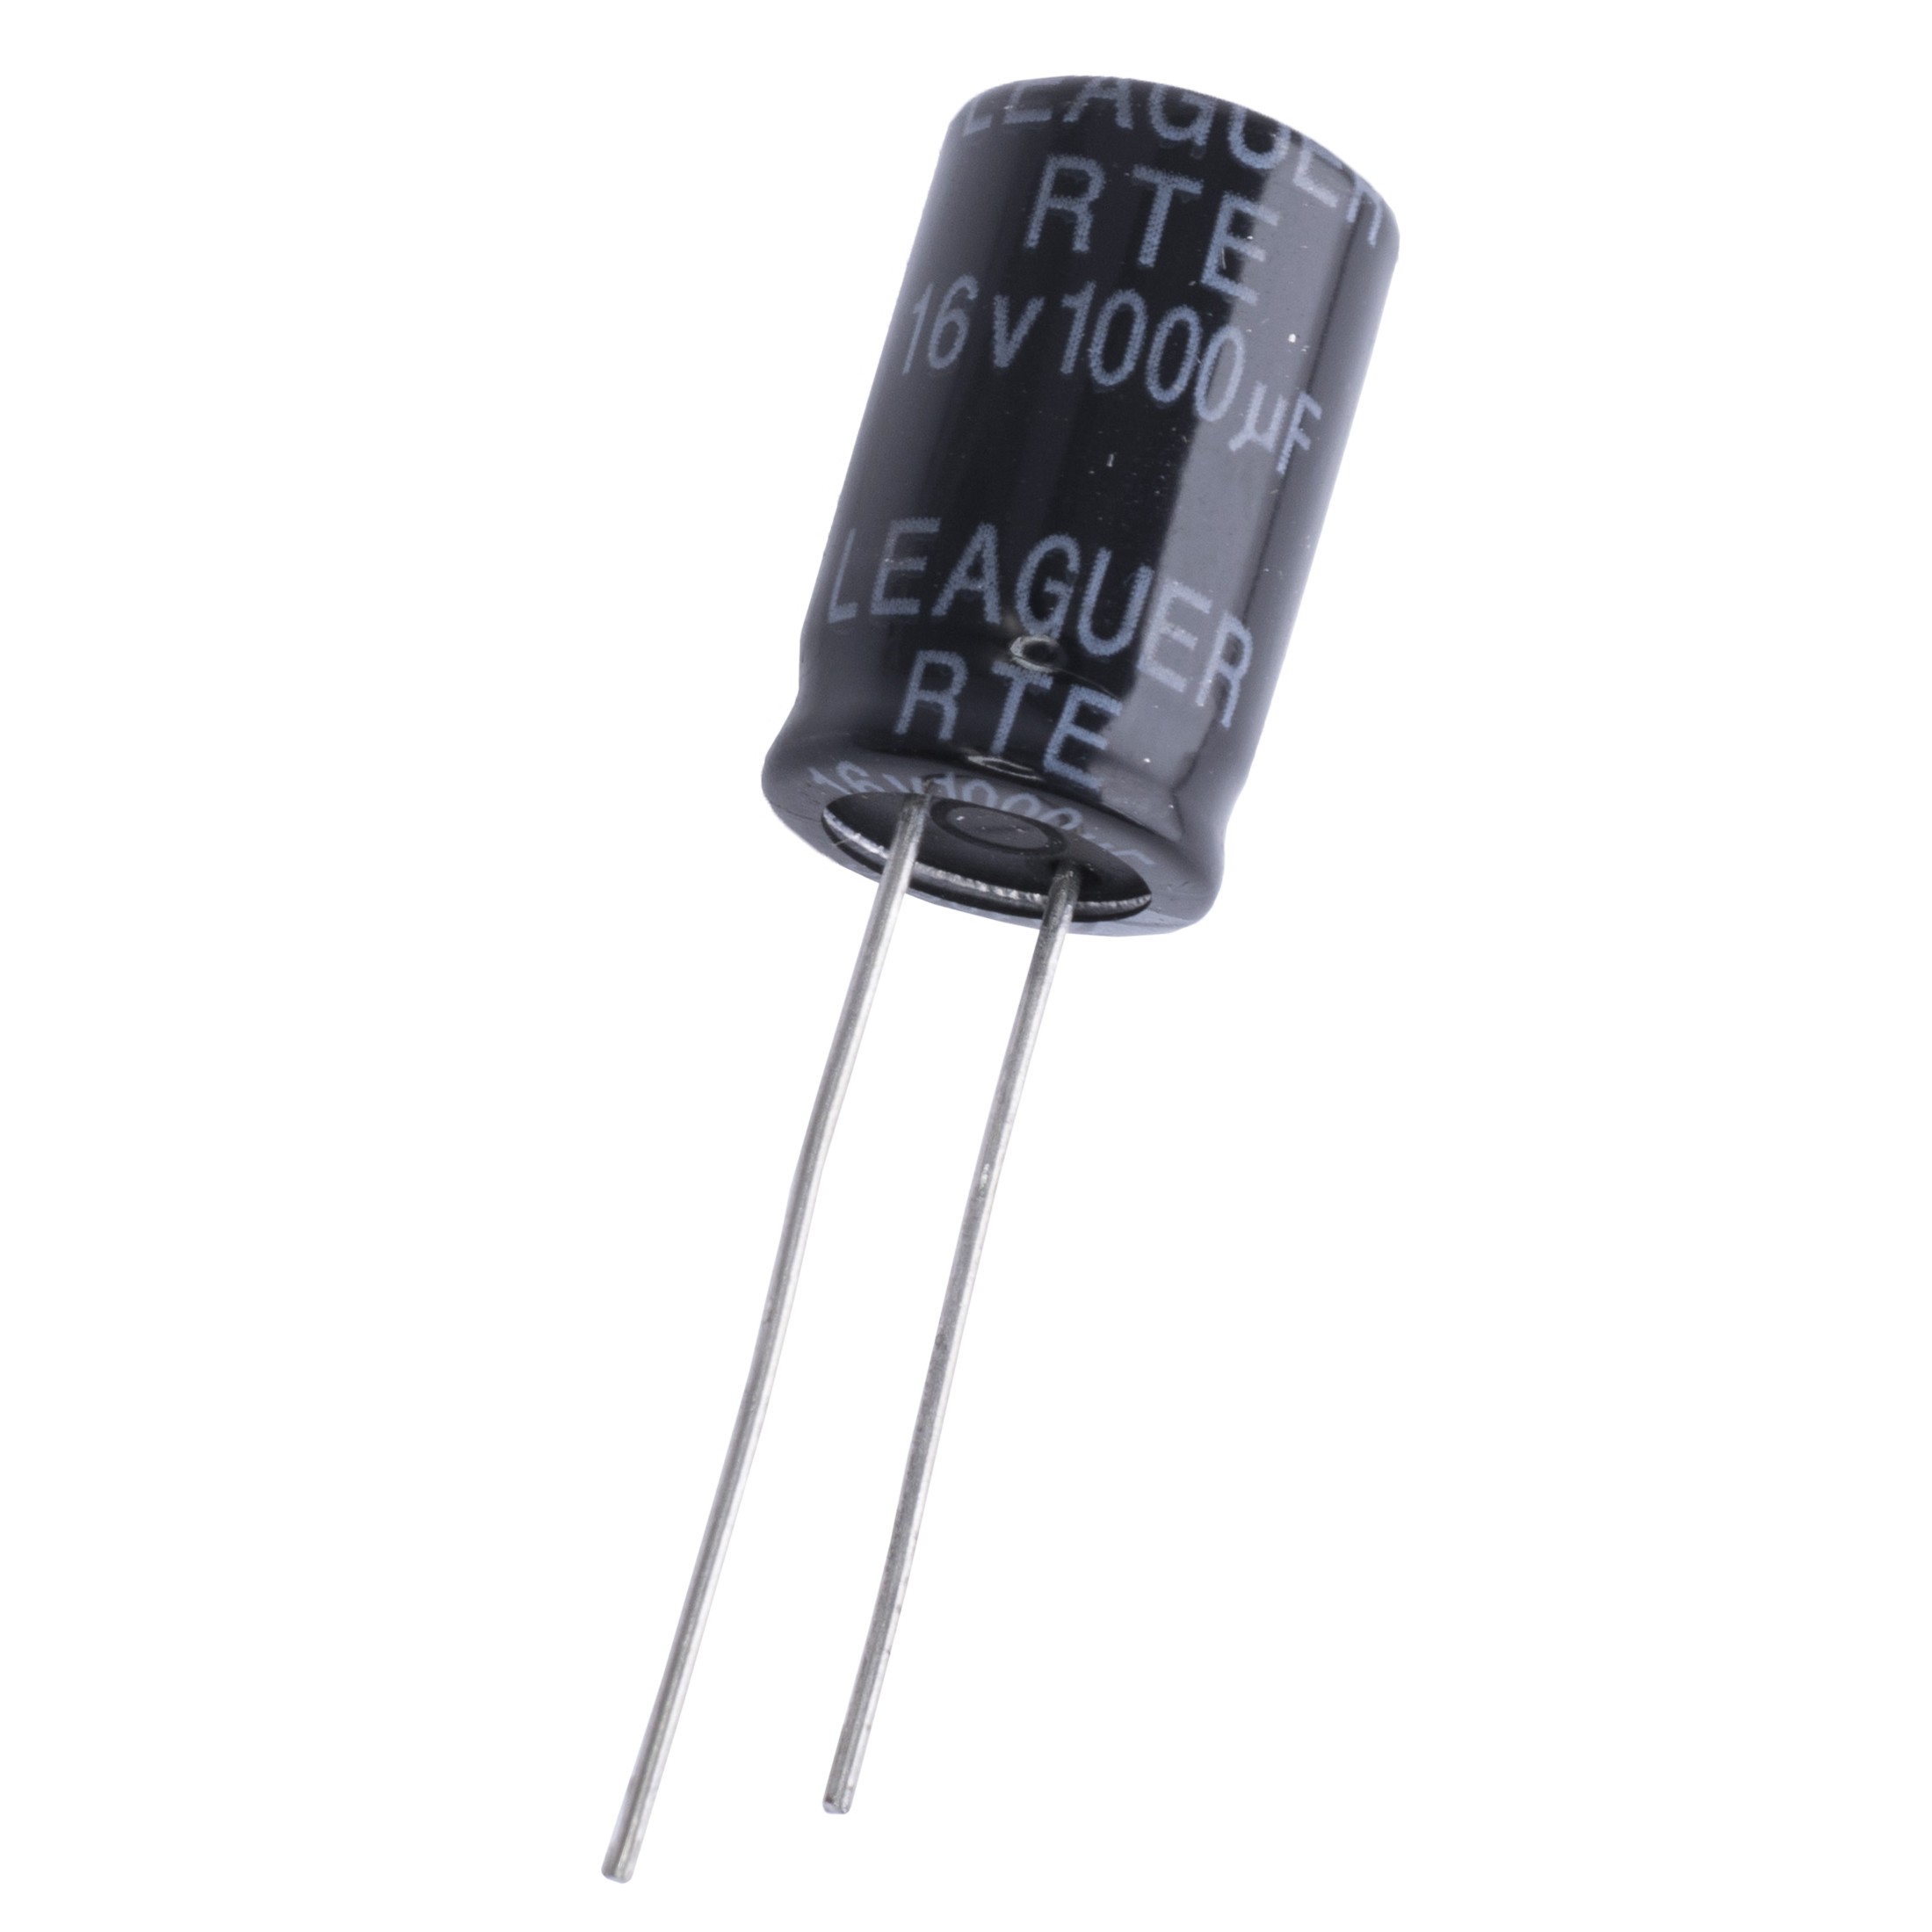 1000uF 16V RTE 10x16mm (low esr) (RTE1C102M1016F-LEAGUER) (електролітичний конденсатор низькоімпедансний)